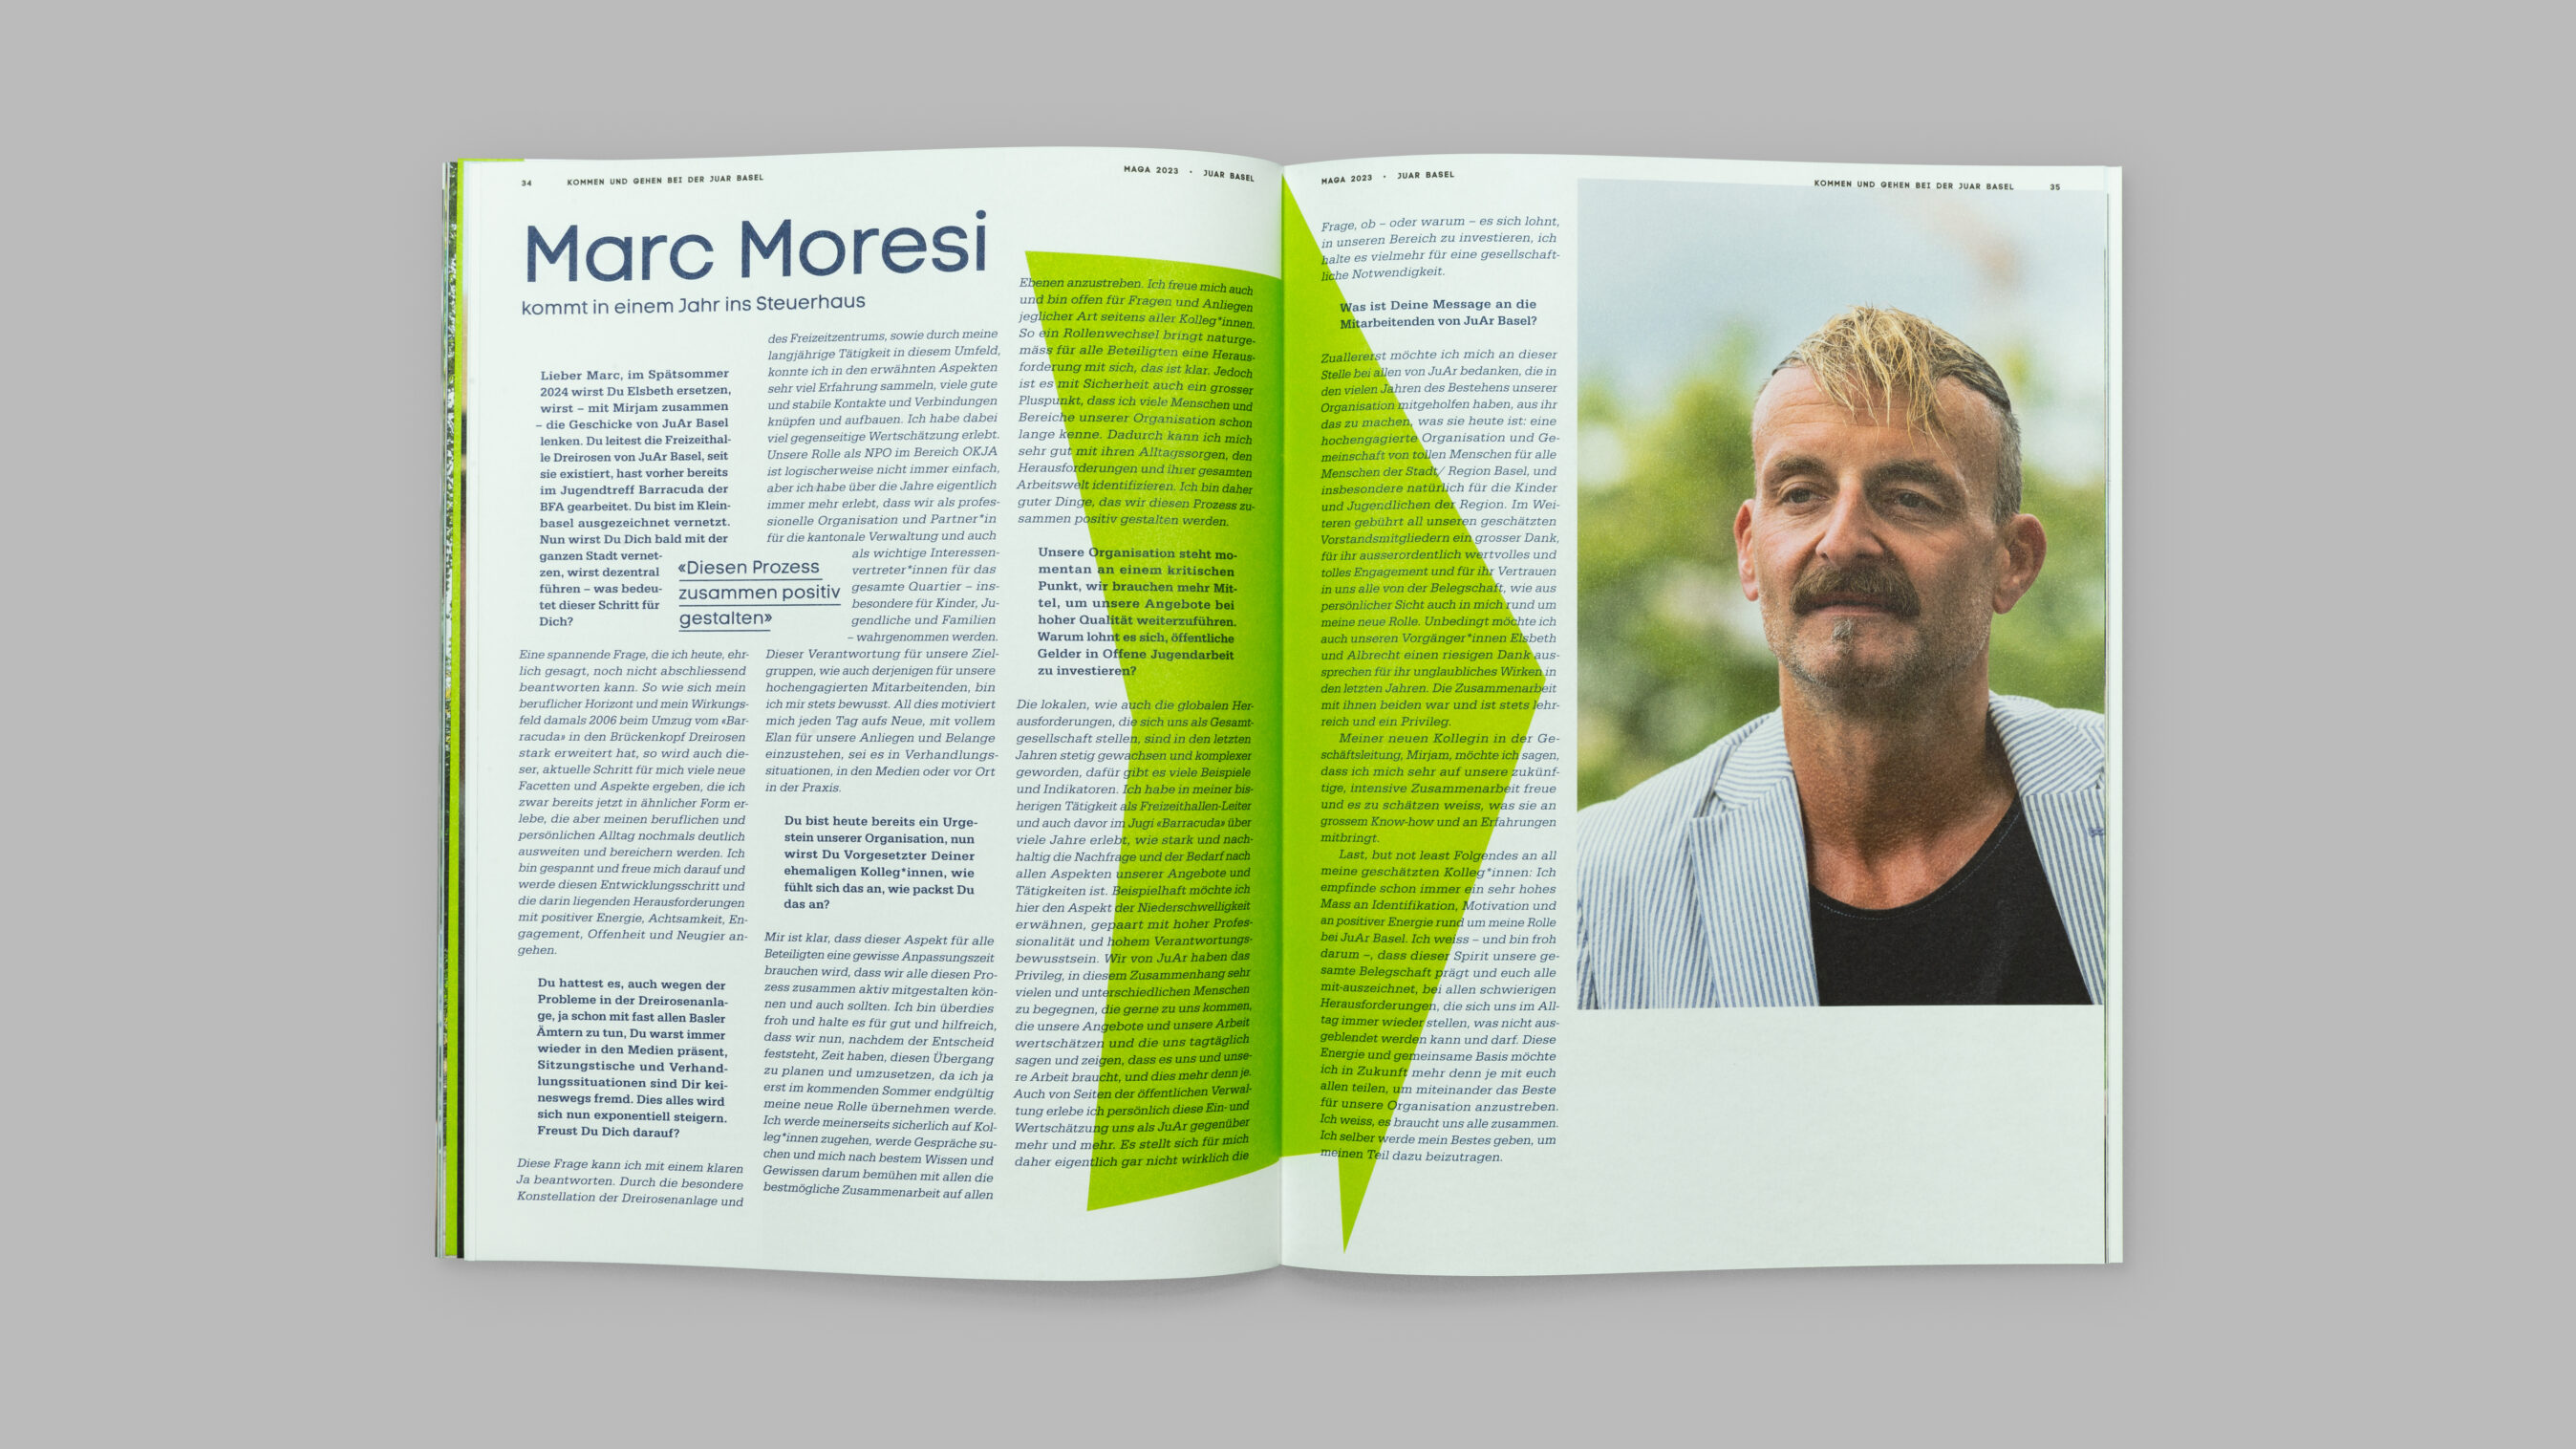 Kommen und Gehen bei der JuAr Basel. Interview von Christian Platz mit Marc Moresi. Layout Grafikdesign Cueni Basel.